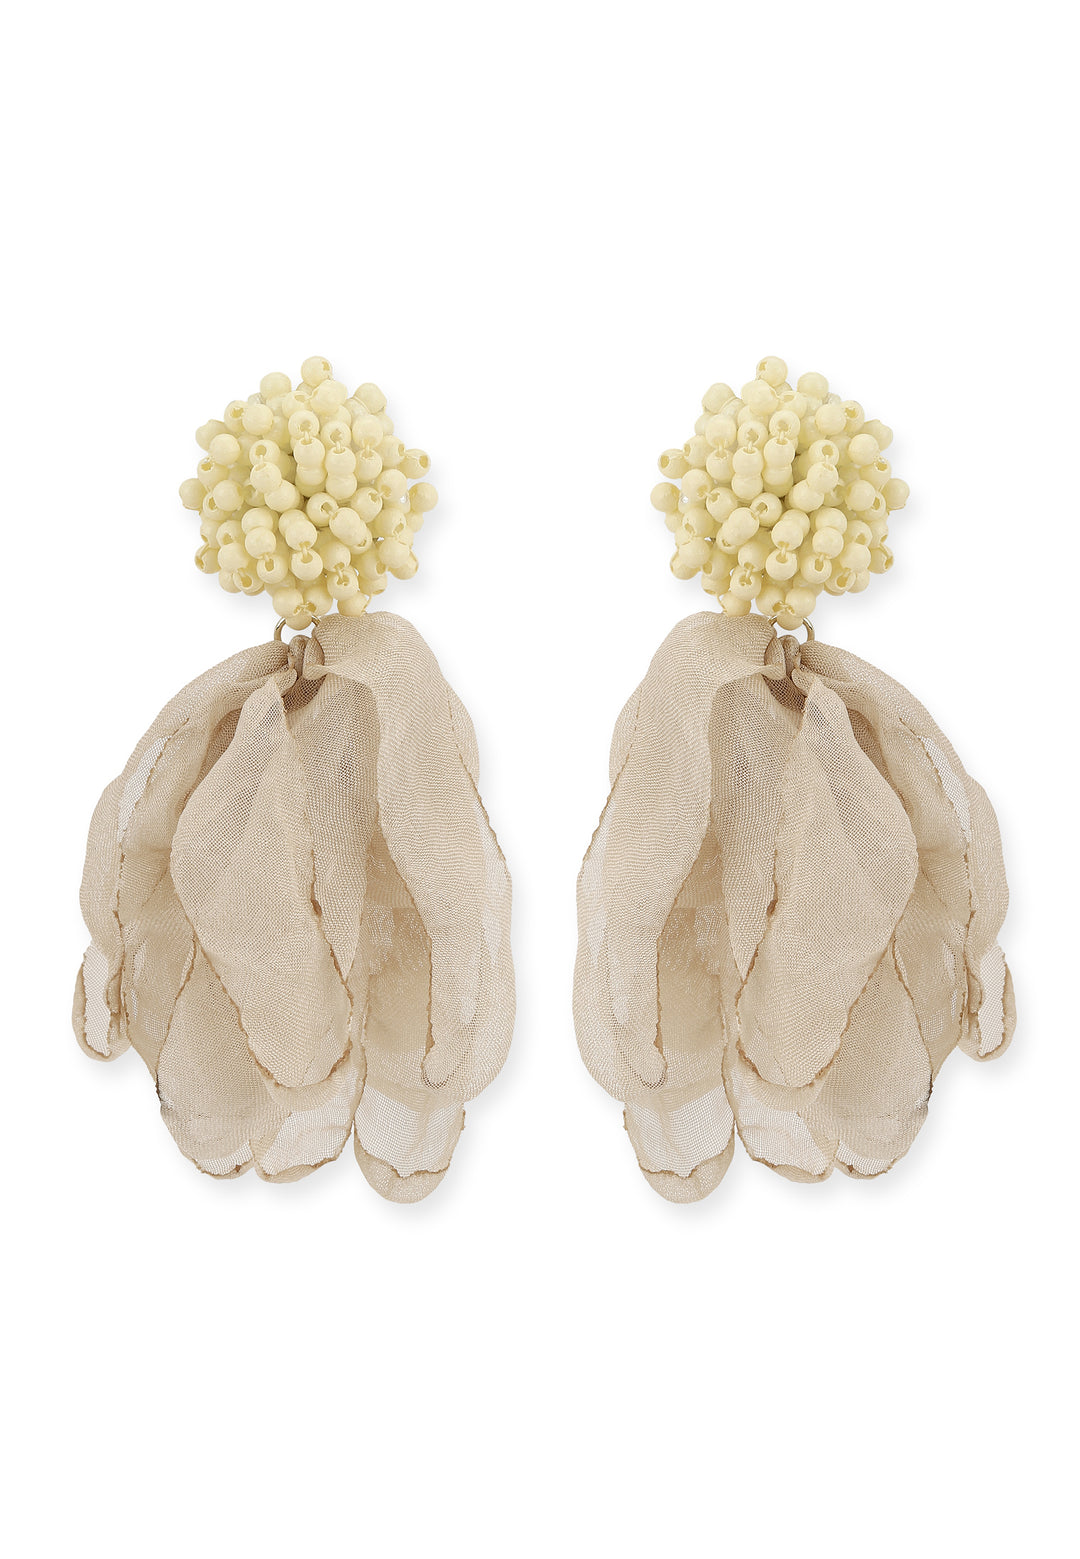 Chrysalis Earrings in Ivory